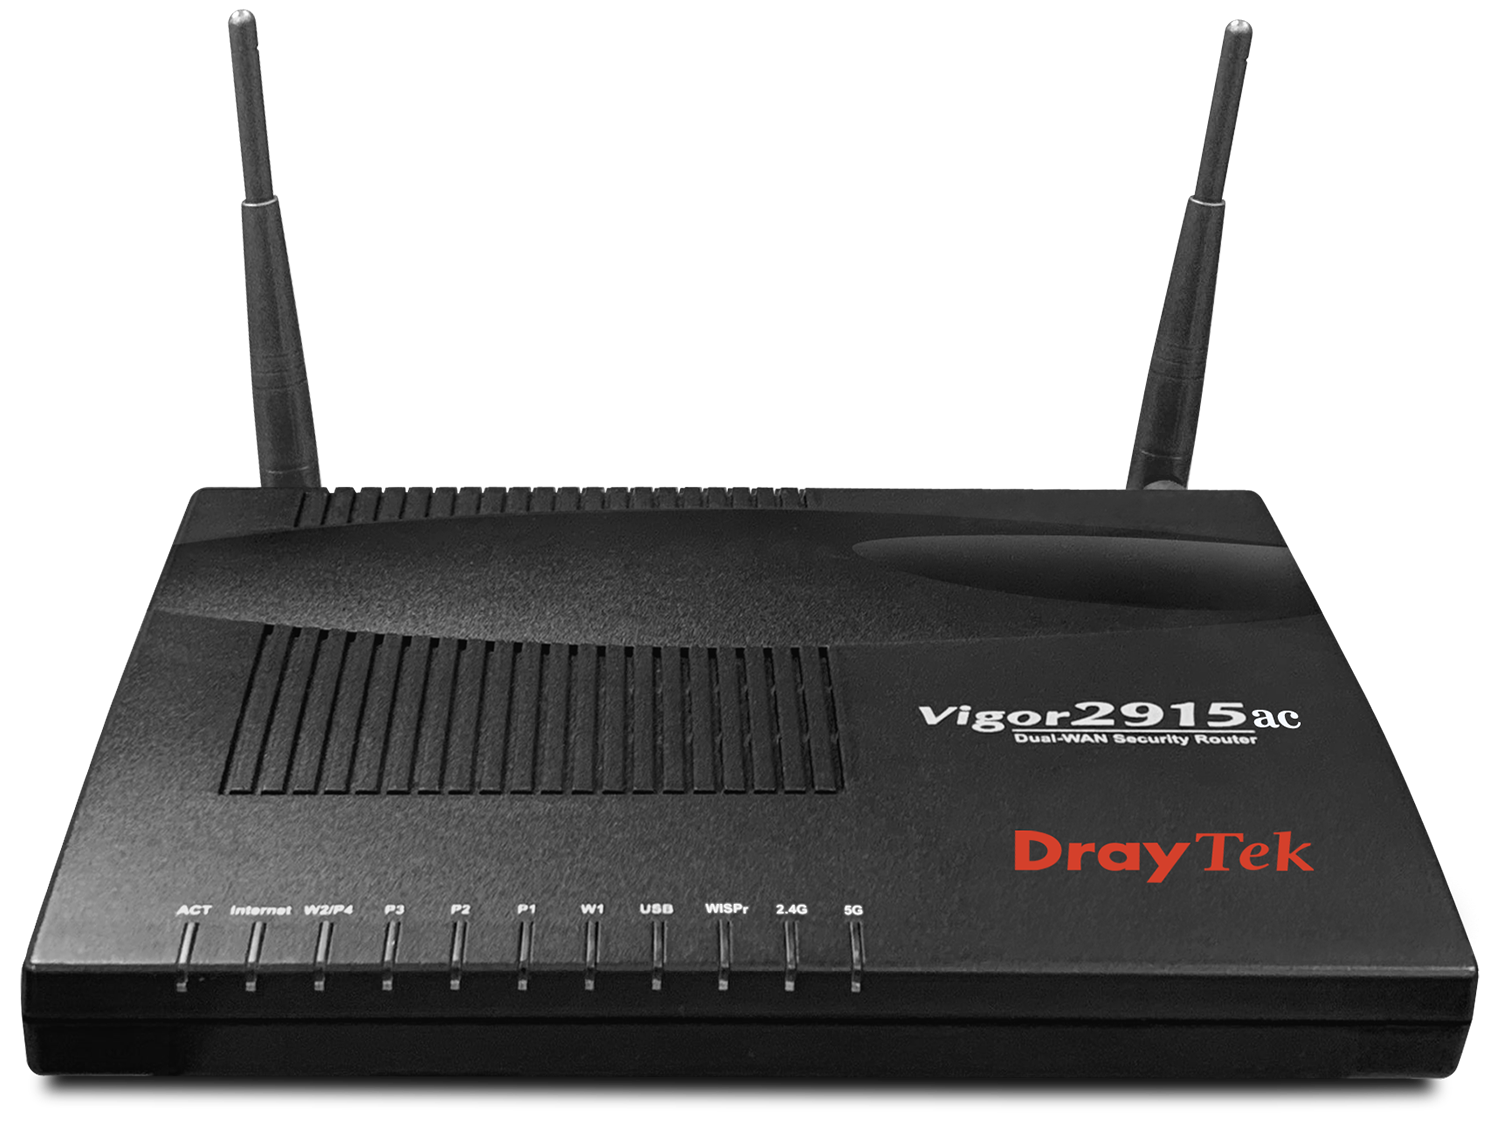 DrayTek Vigor2915ac - Dual-WAN Broadband Firewall VPN 802.11n Router